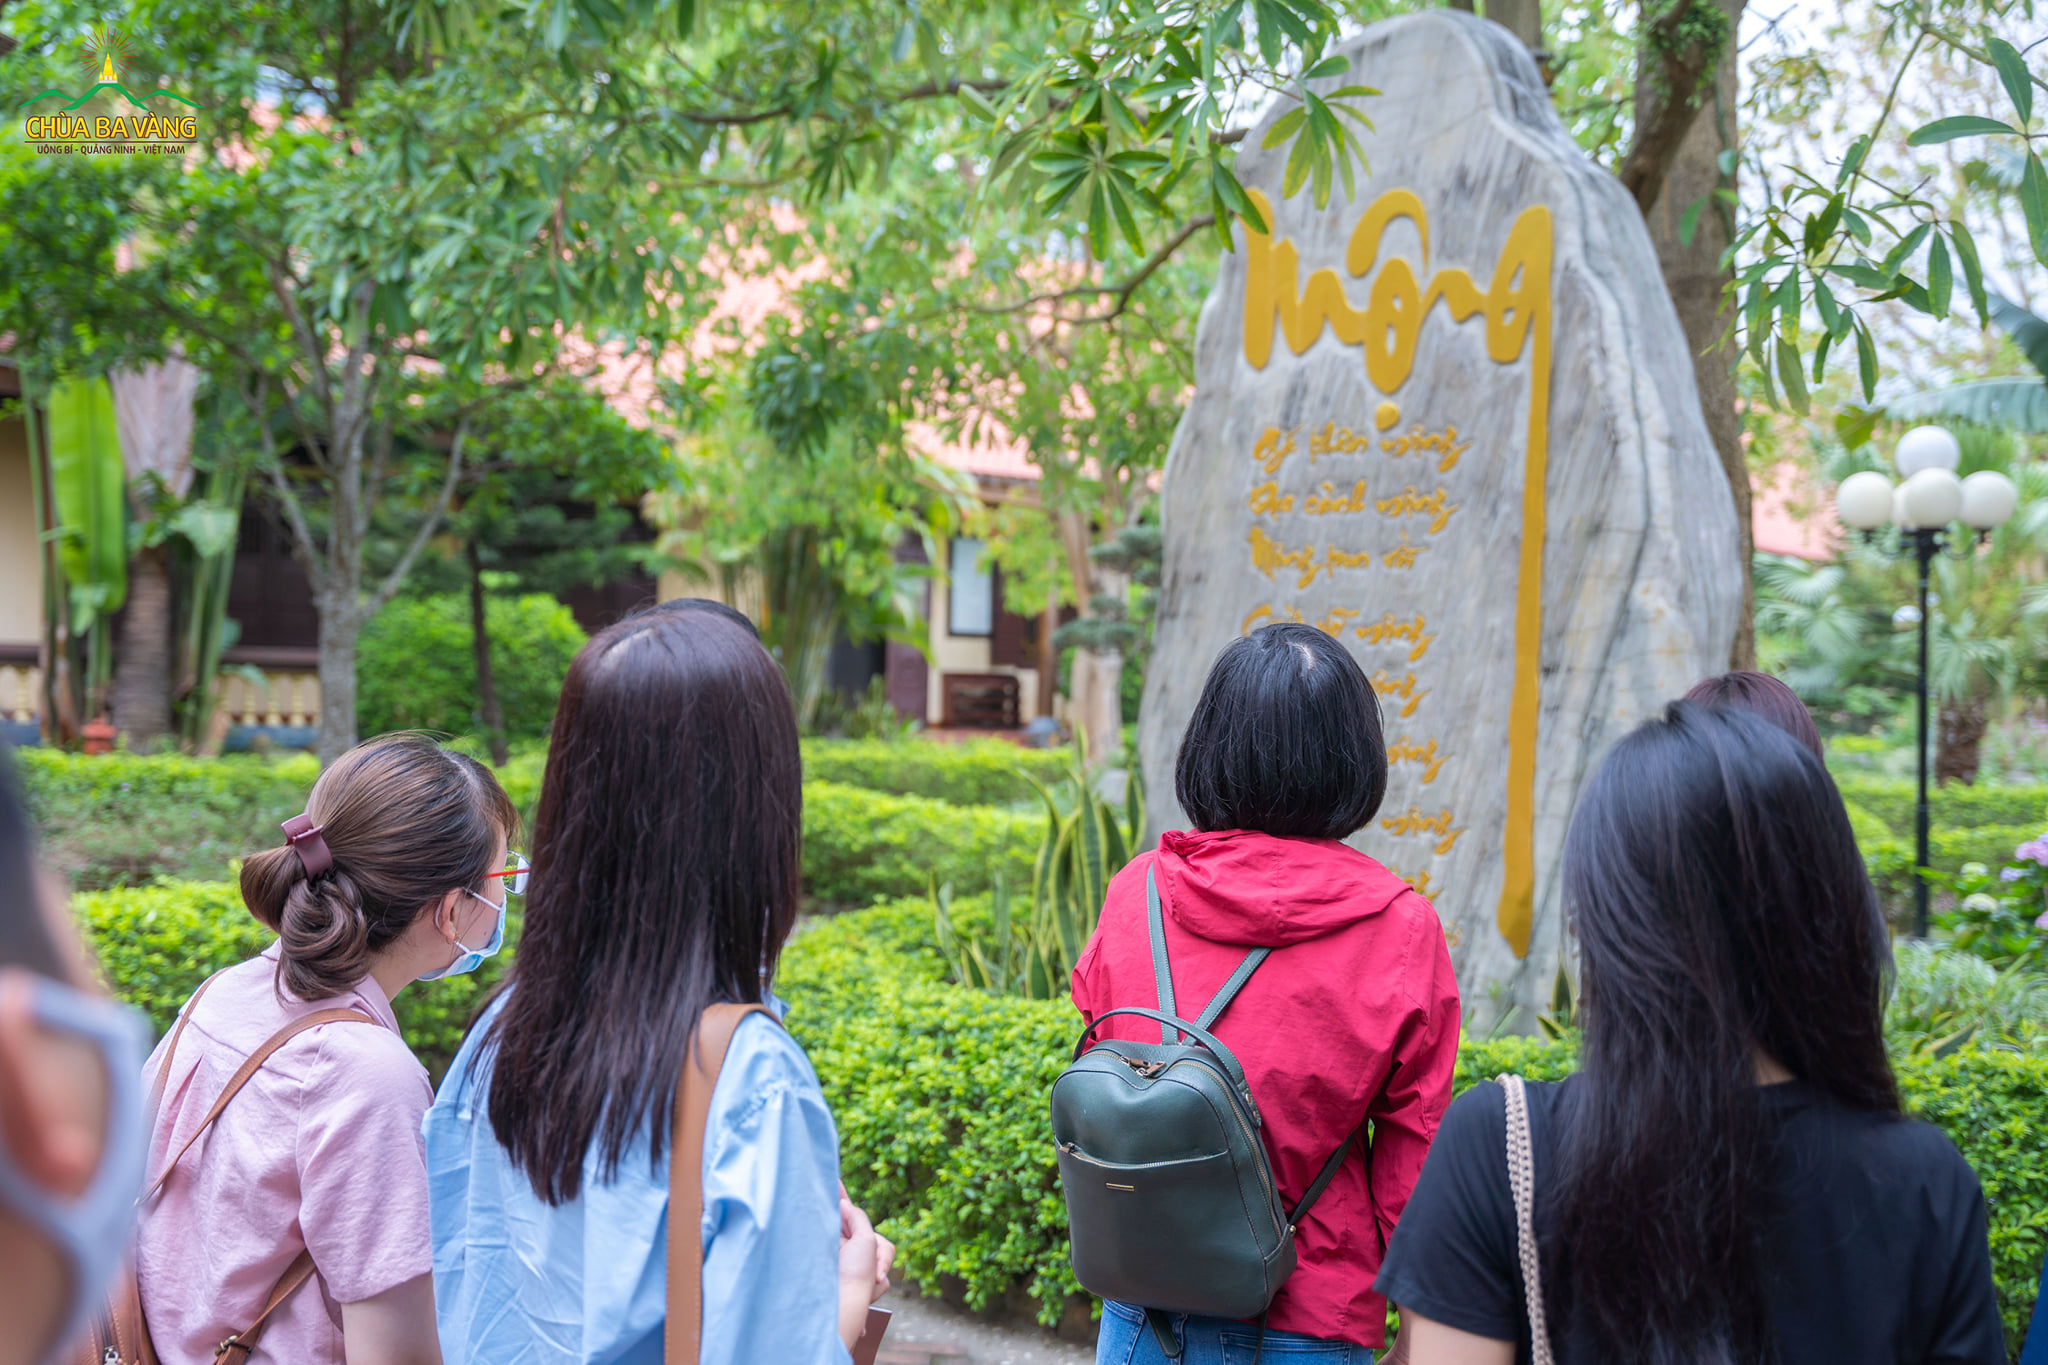 Thành viên trong đoàn tìm hiểu bài thơ được khắc trong khuôn viên nội viện Tăng